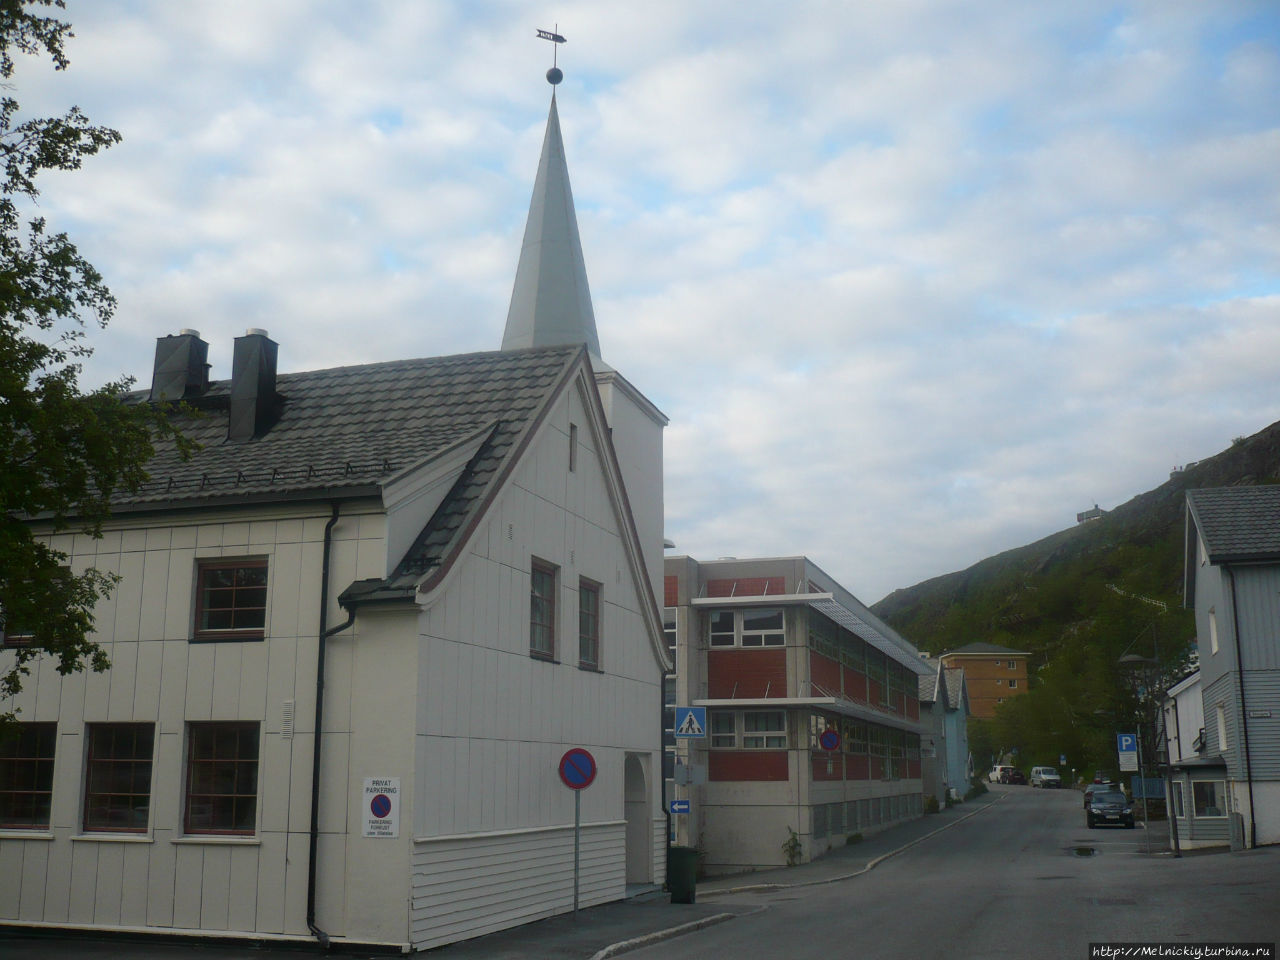 Методистская церковь / Metodistkirken i Norge